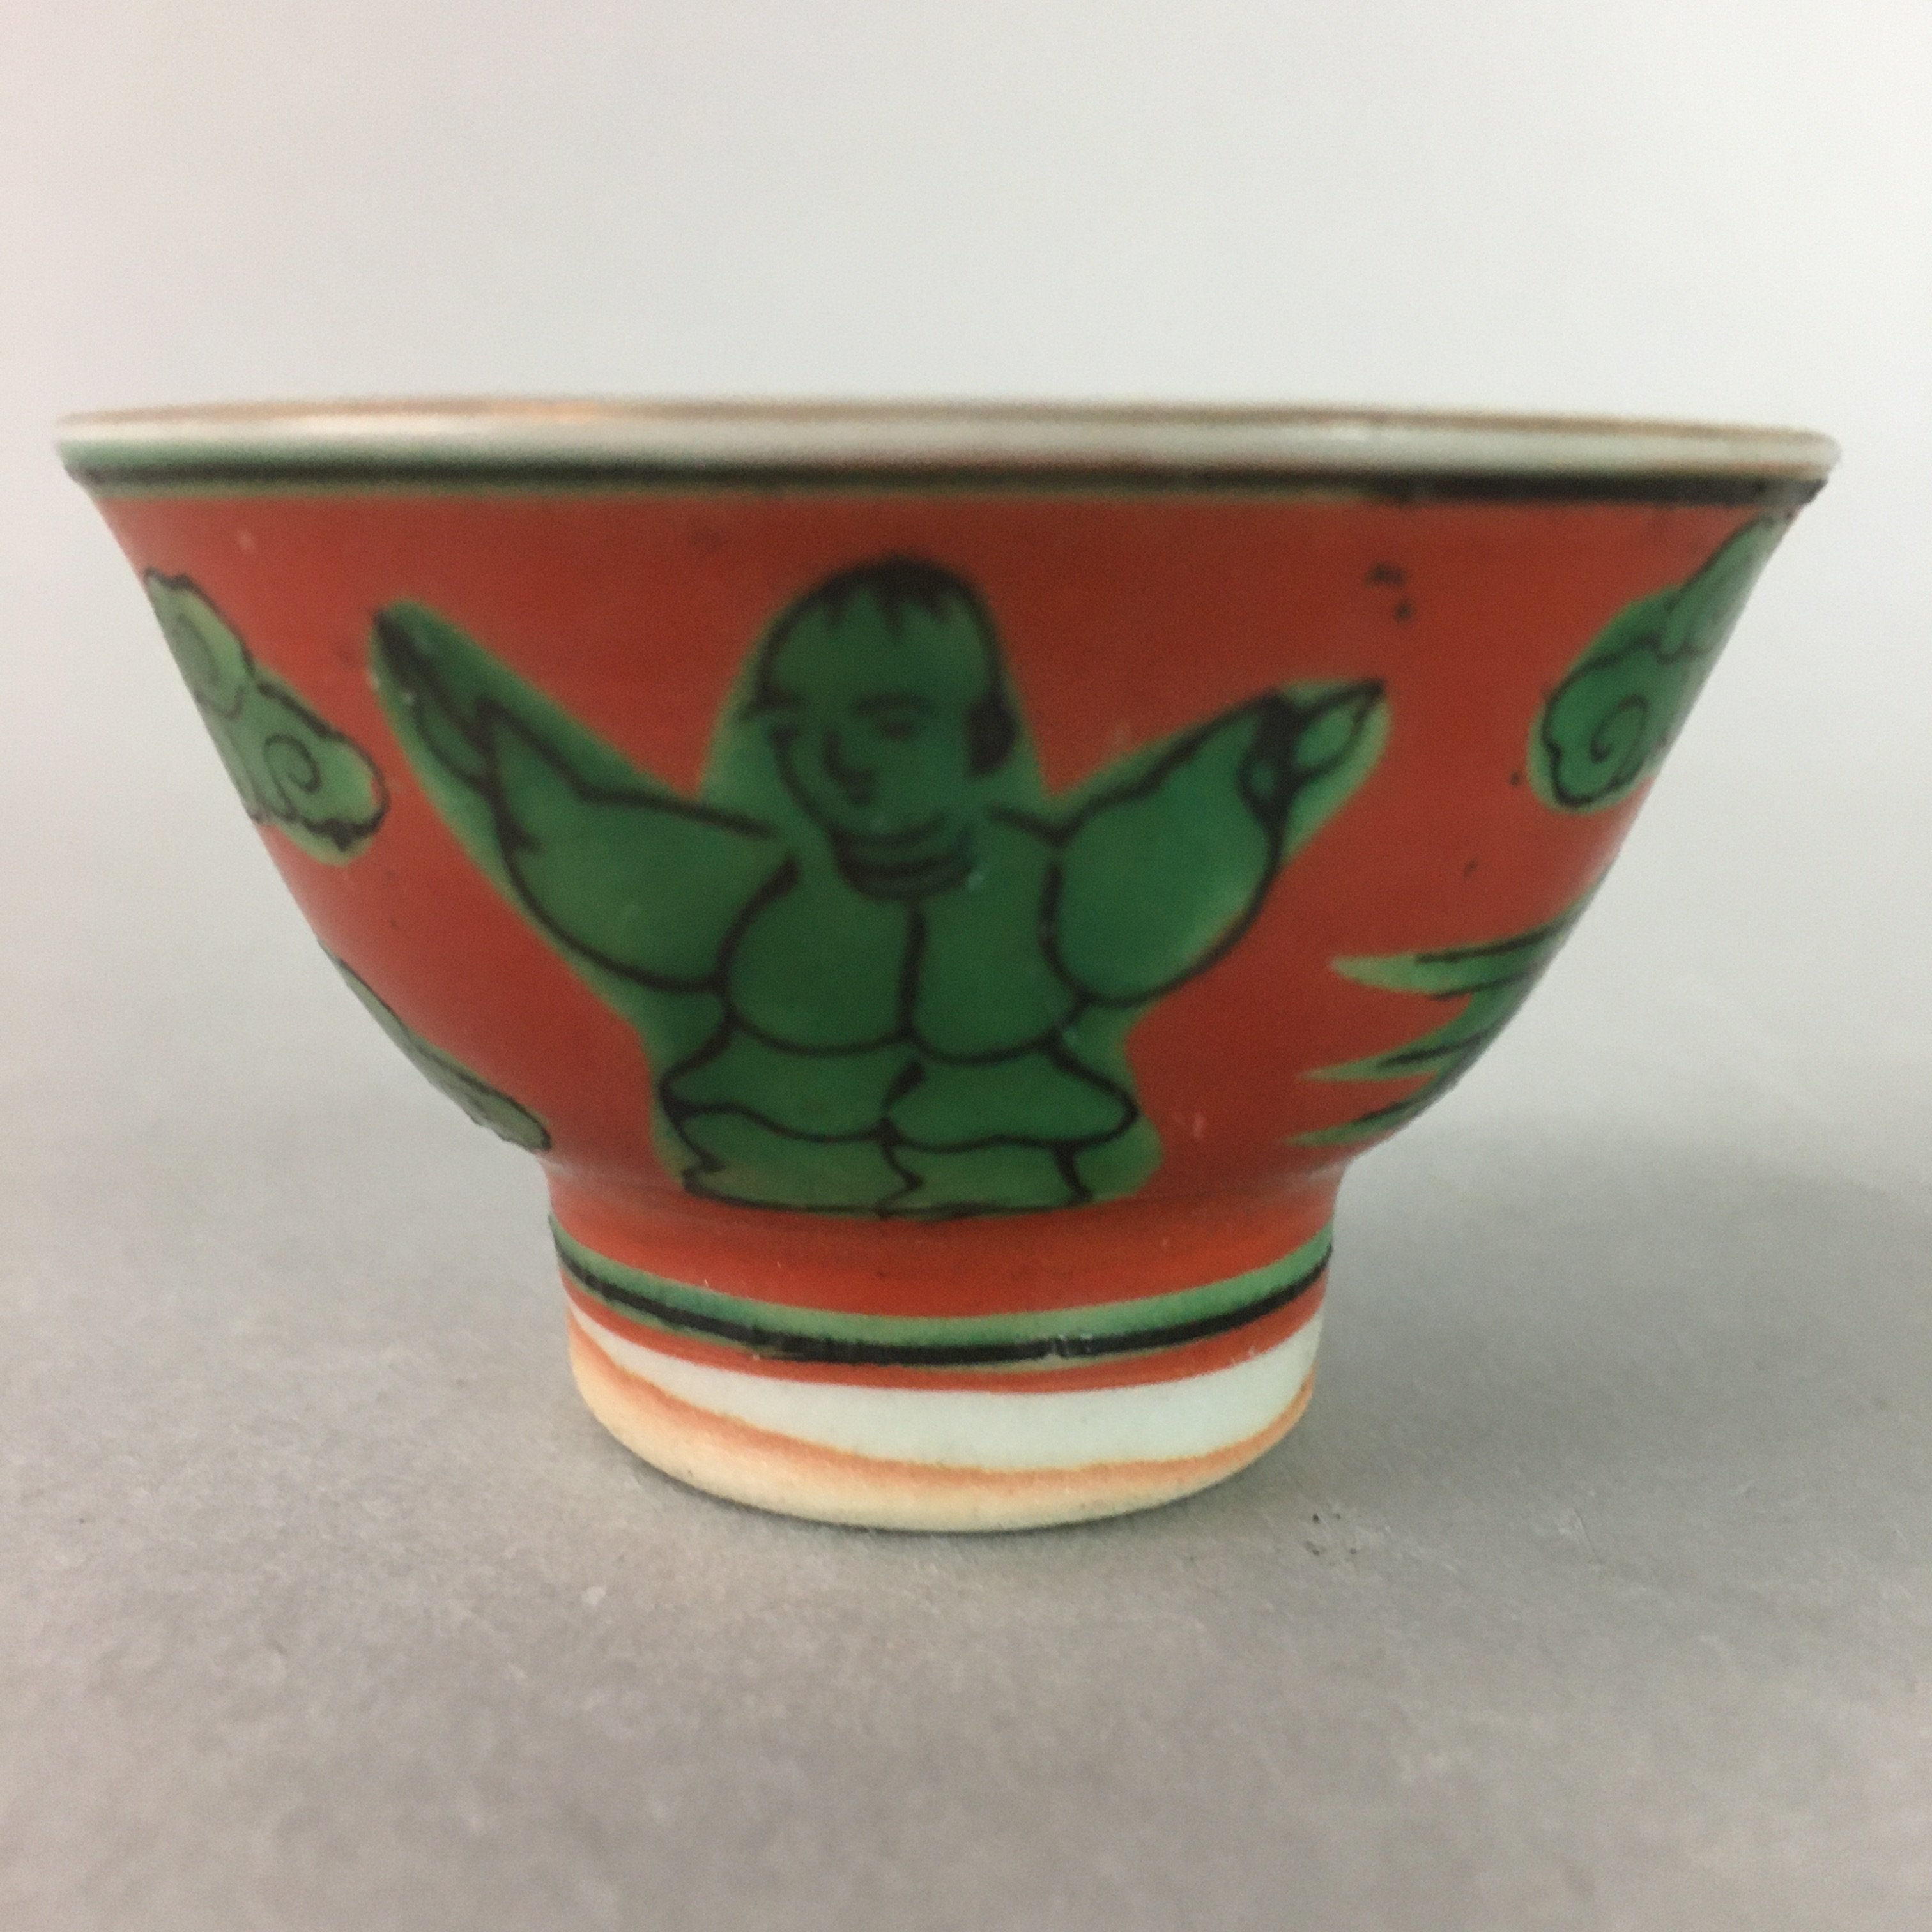 Japanese Ceramic Sake Cup Guinomi Sakazuki Kutani Vtg Pottery Red Green GU662